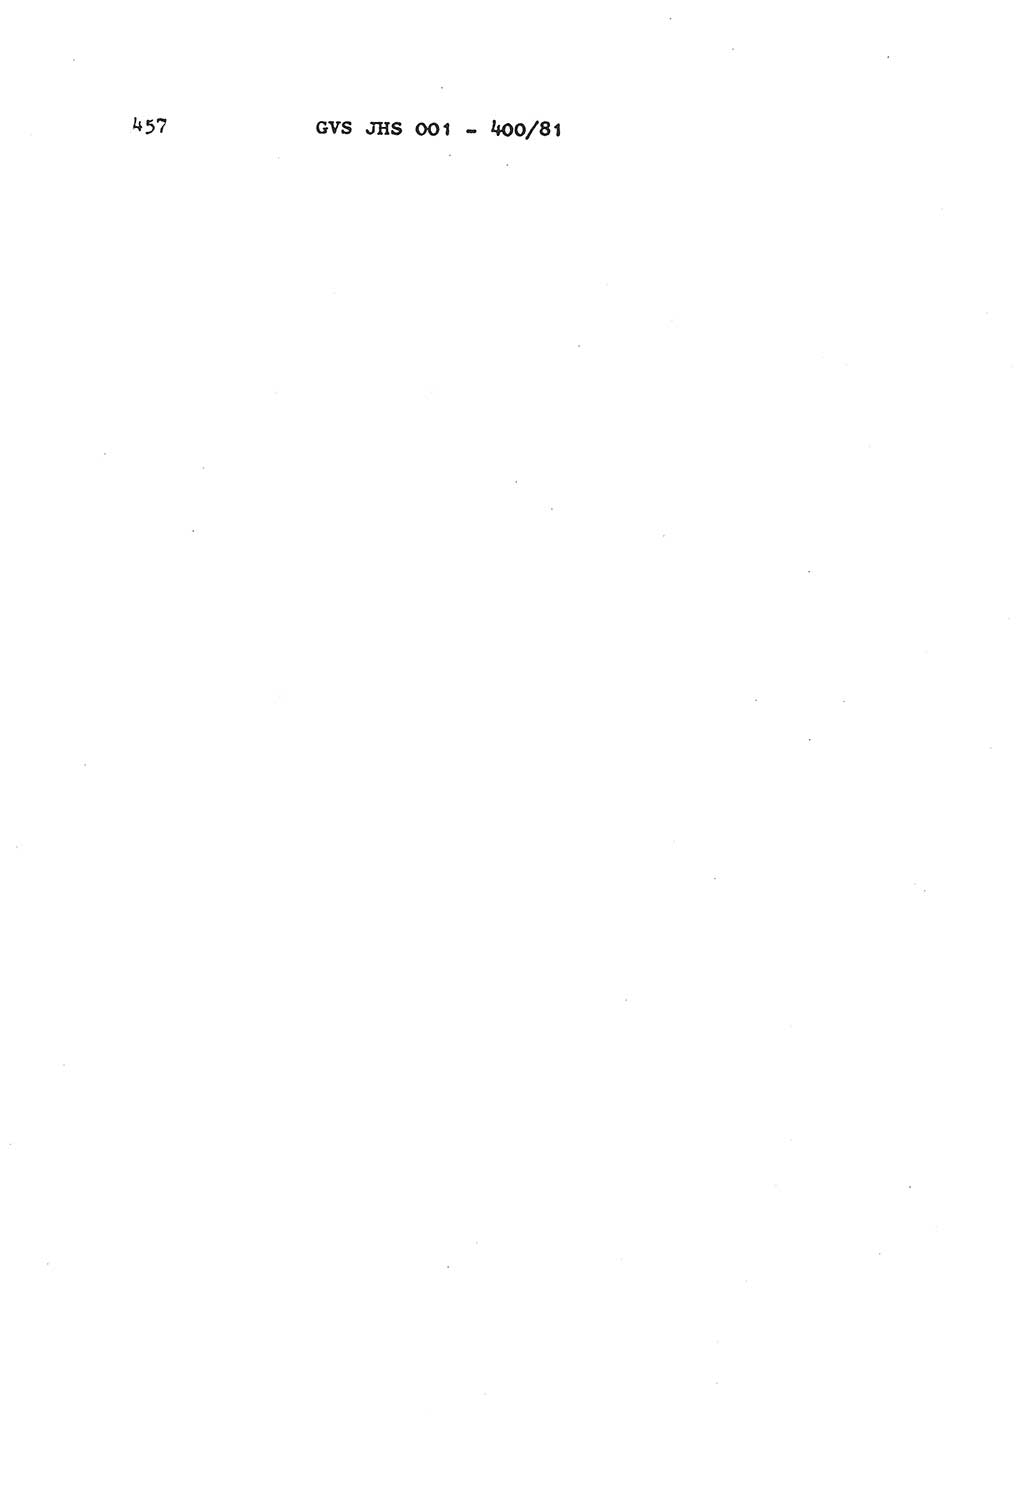 Wörterbuch der politisch-operativen Arbeit, Ministerium für Staatssicherheit (MfS) [Deutsche Demokratische Republik (DDR)], Juristische Hochschule (JHS), Geheime Verschlußsache (GVS) o001-400/81, Potsdam 1985, Blatt 457 (Wb. pol.-op. Arb. MfS DDR JHS GVS o001-400/81 1985, Bl. 457)